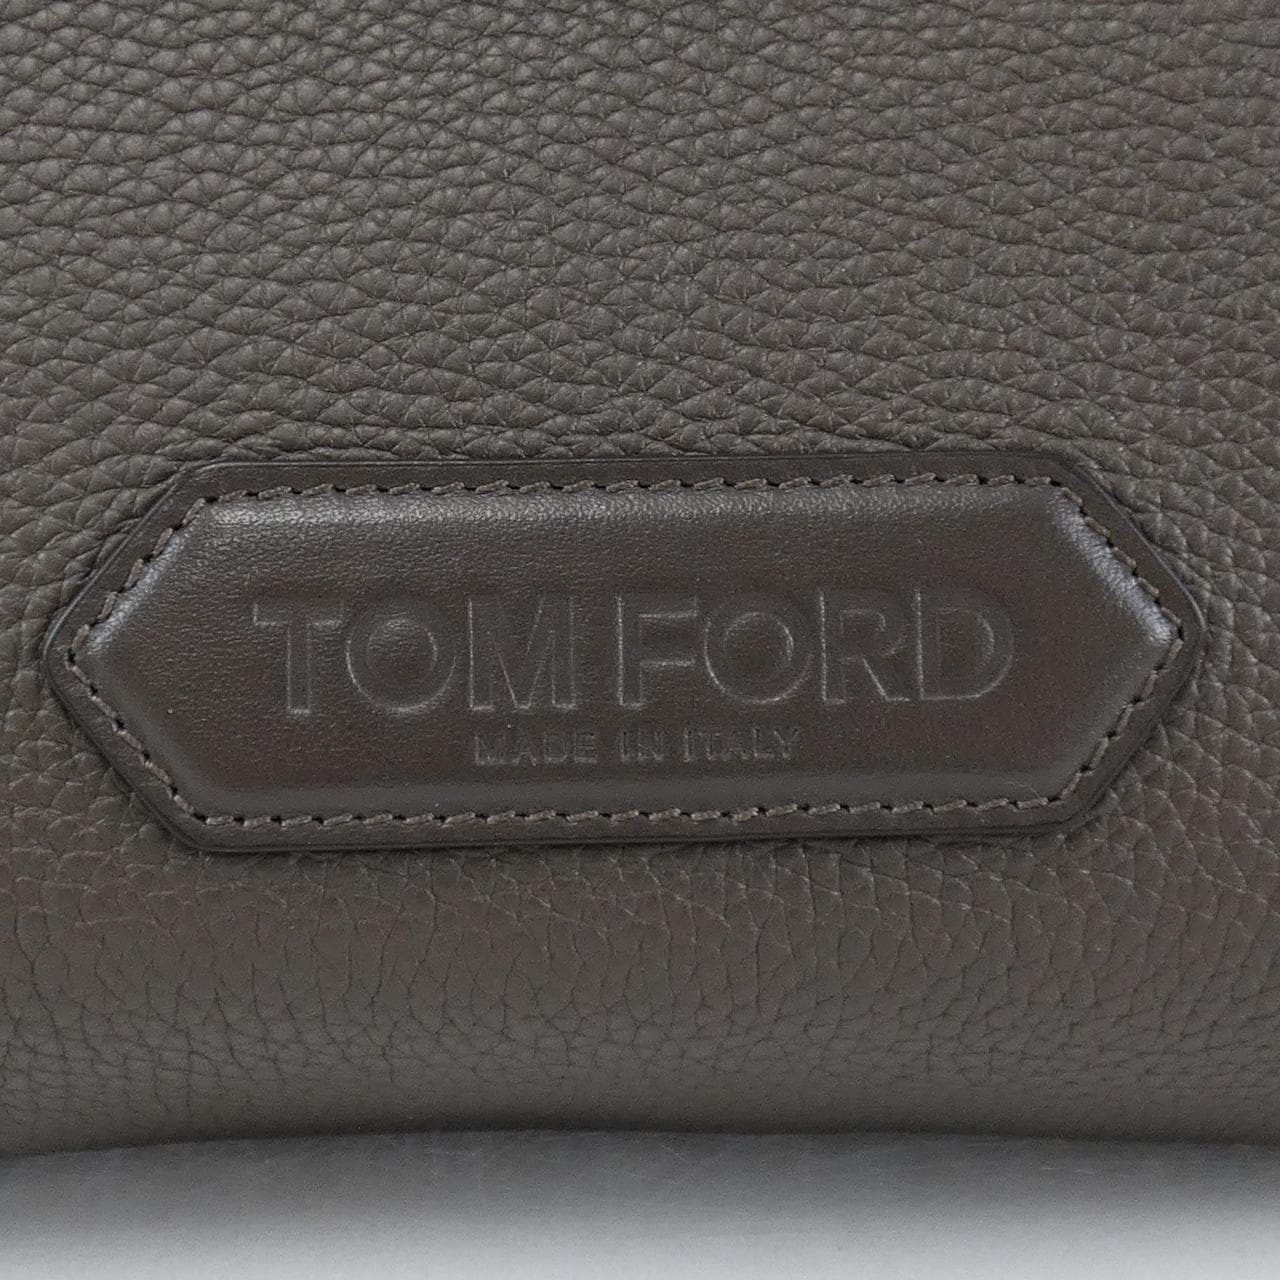 TOM FORD TOM FORD BAG